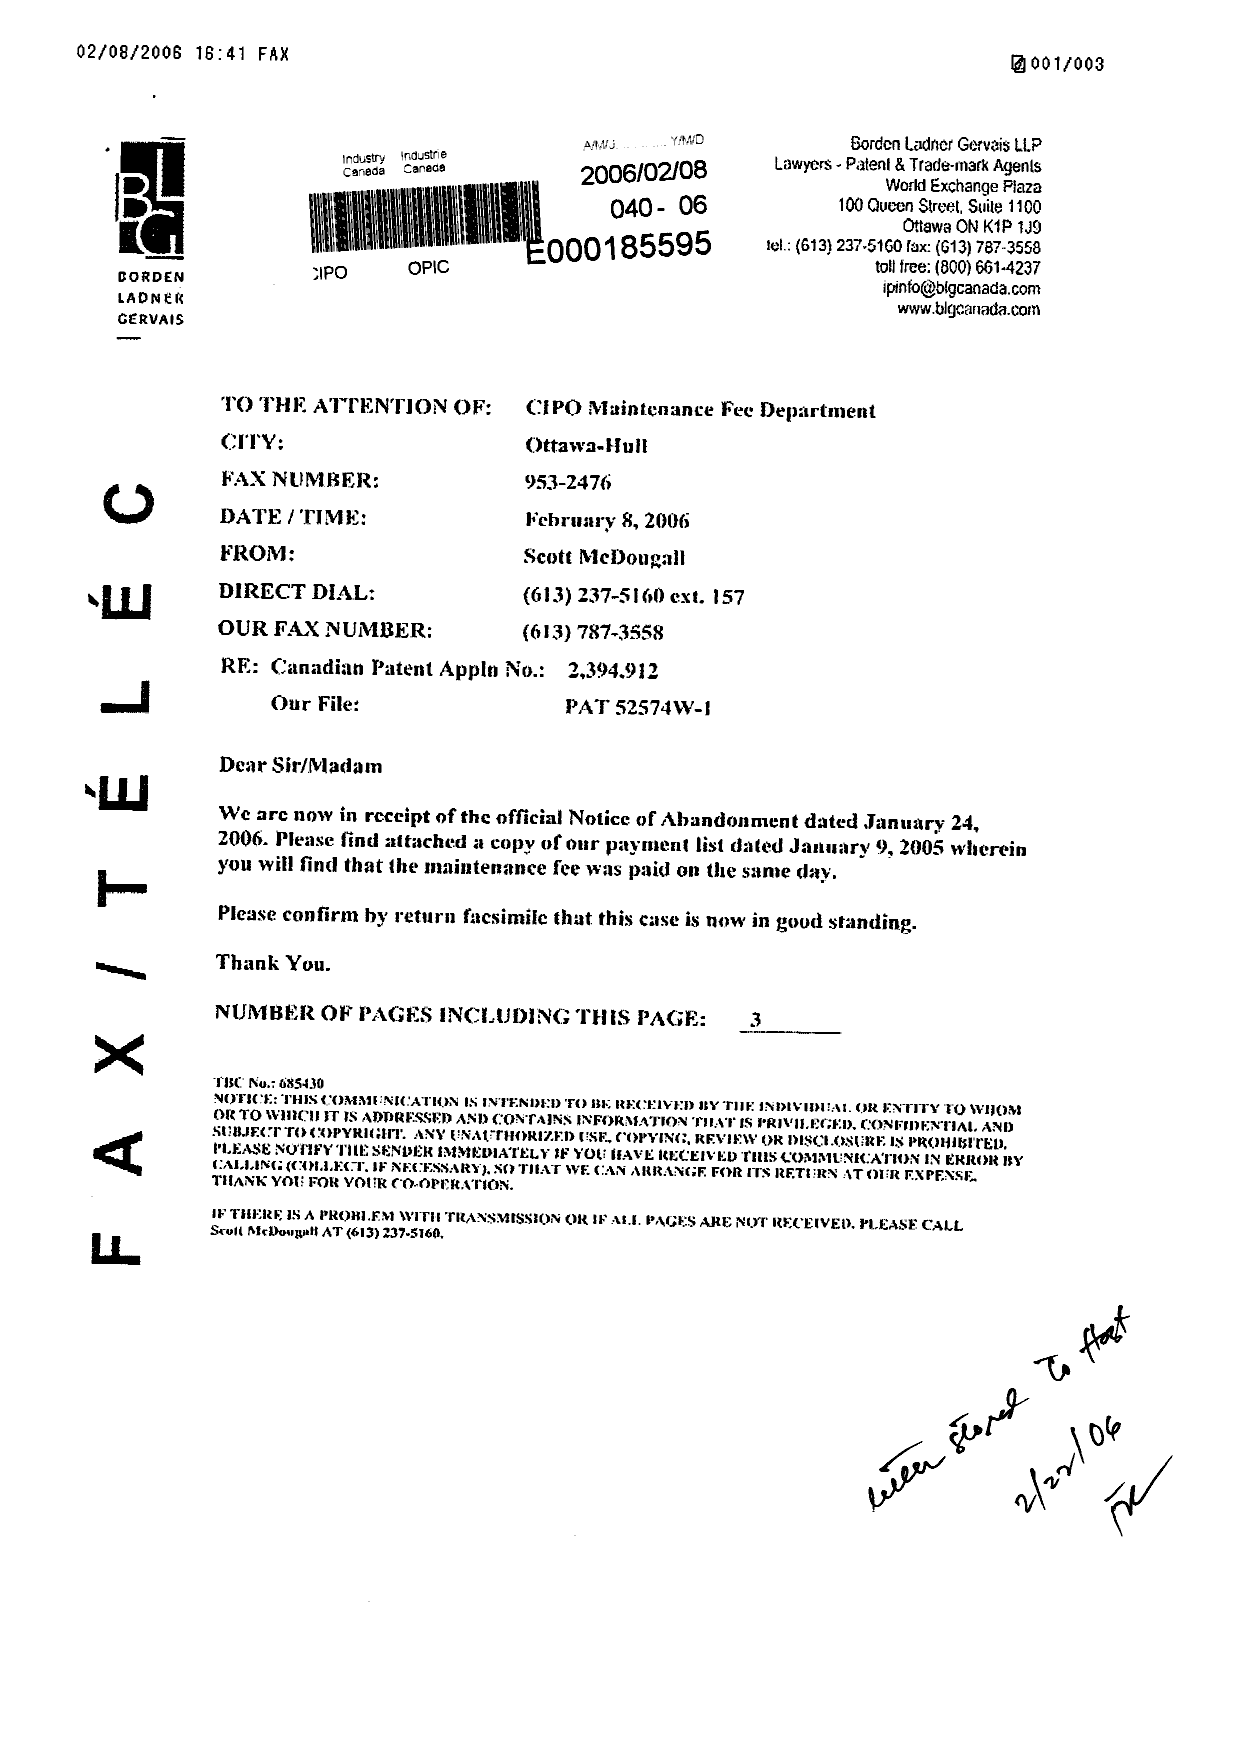 Document de brevet canadien 2394912. Correspondance 20060208. Image 1 de 3